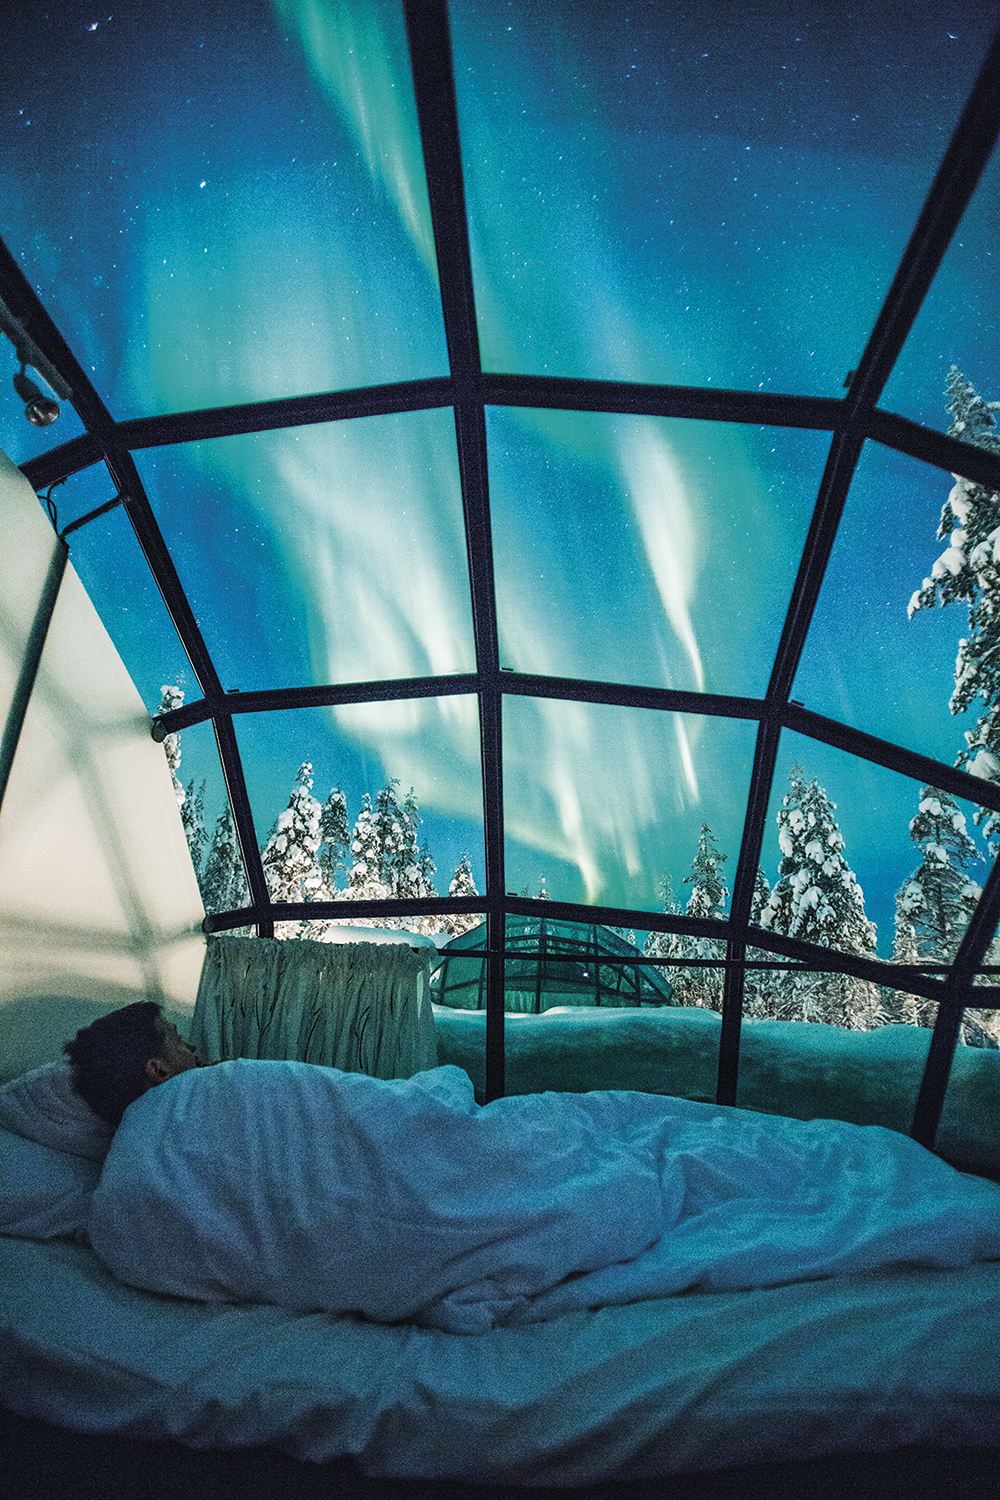 NO GELO - Resort na Finlândia: vista da aurora boreal -